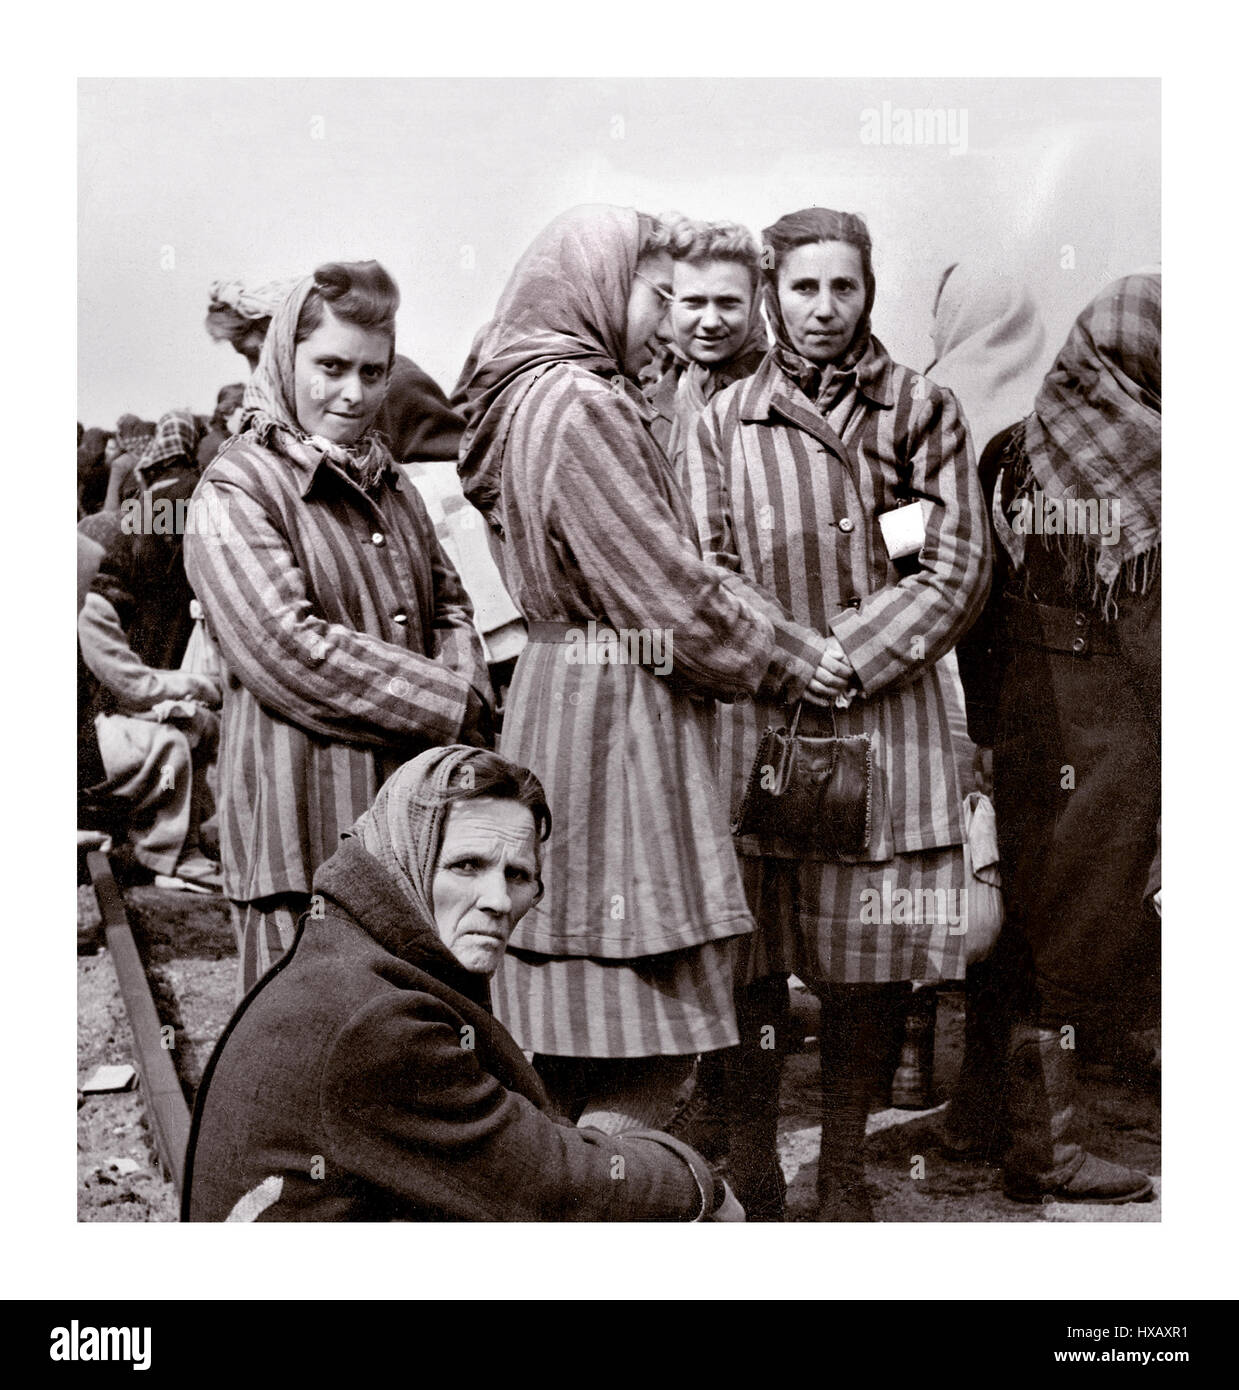 RAVENSBRÜCK femmes prisonnières dans le camp rayé uniforme du camp de concentration et d'extermination de Ravensbrück géré par WW2 Allemagne nazie, juste libéré 1945 par l'Armée rouge.Le camp de détention féminin était situé à 90 km au nord de Berlin…Allemagne nazie Seconde Guerre mondiale Banque D'Images